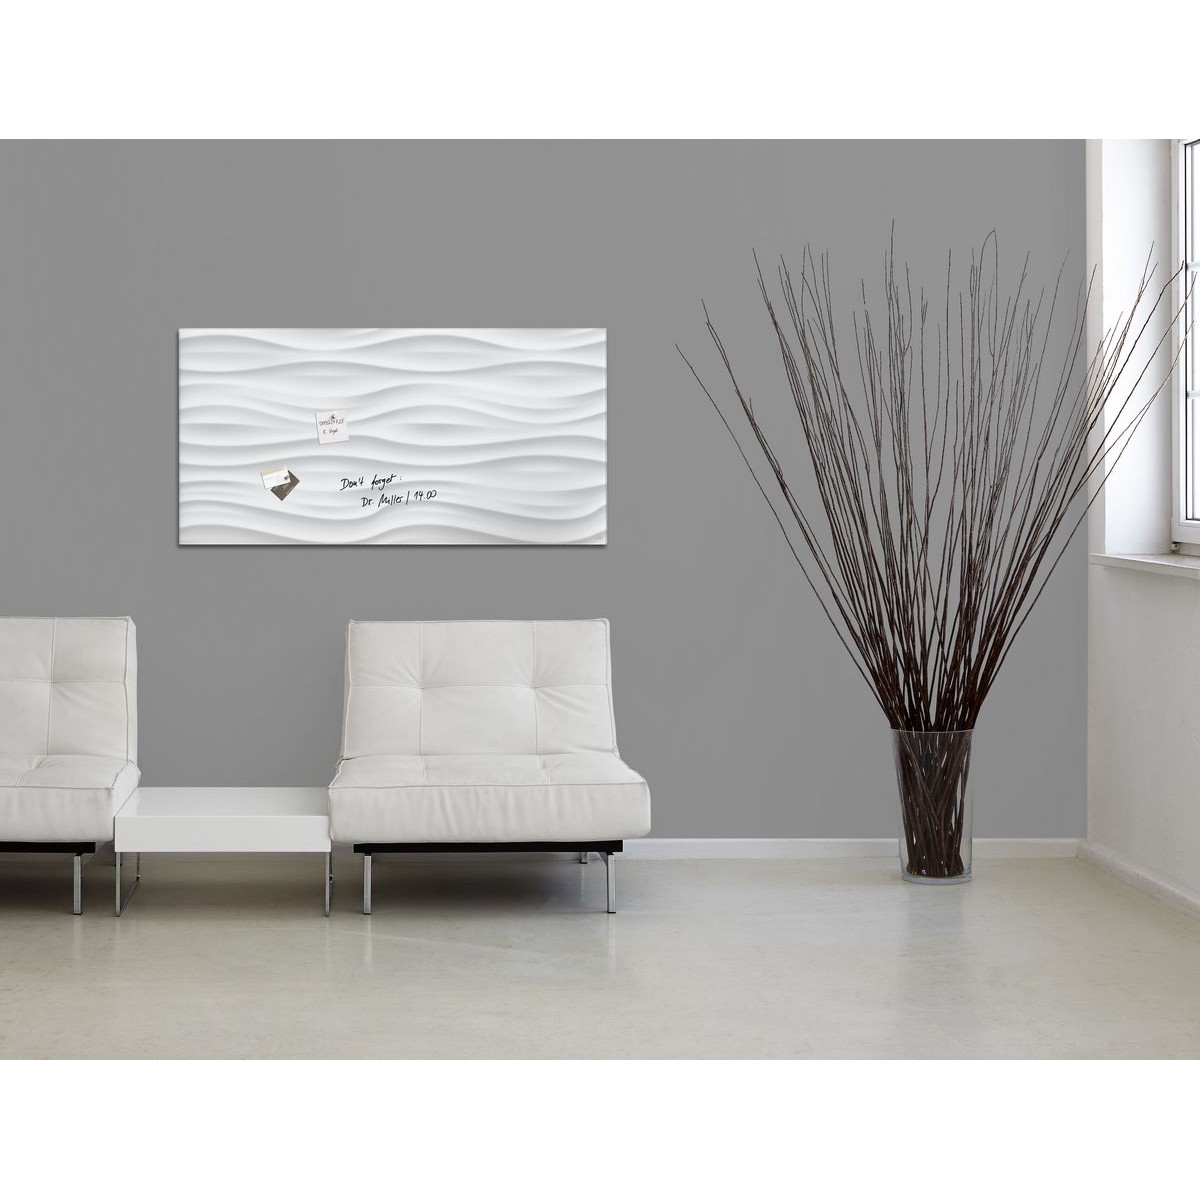 GL260 - Sigel - Lavagna Magnetica - White-Wave - 91 x 46 cm 